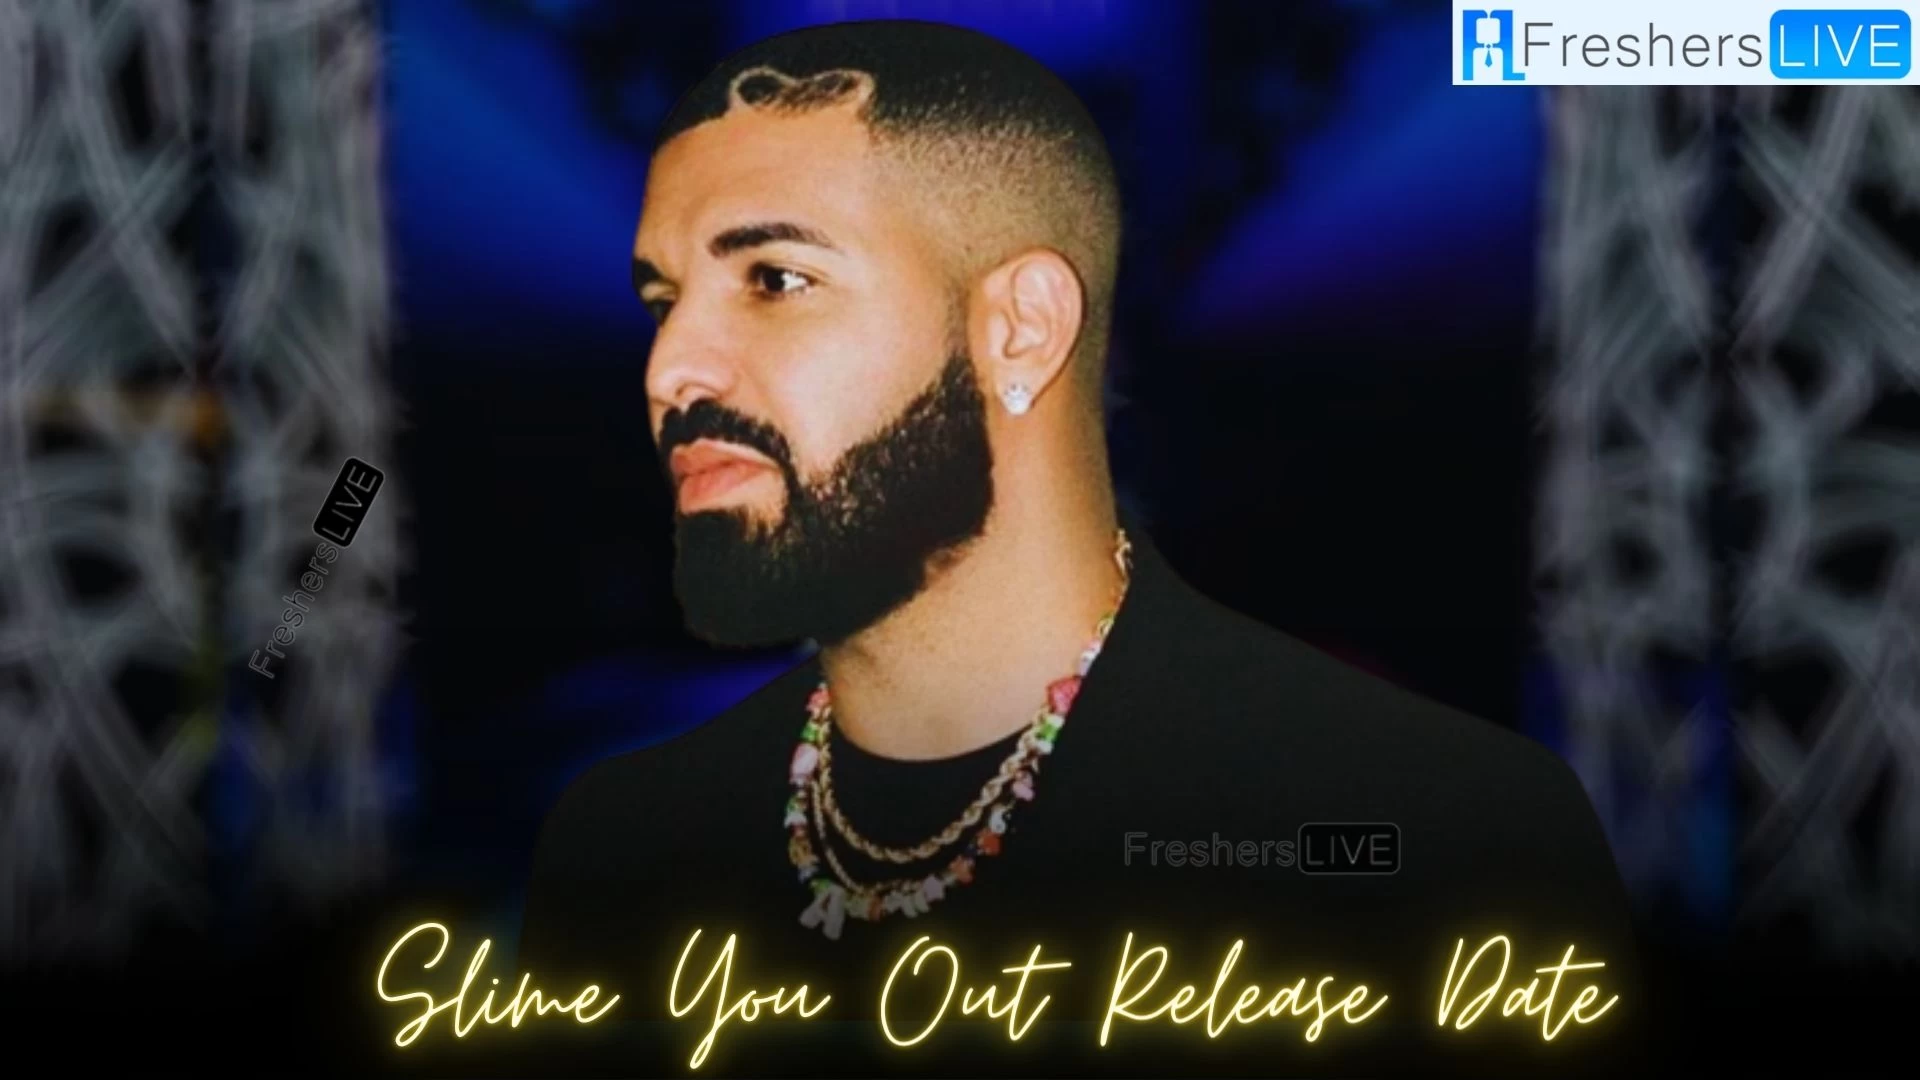 Fecha de lanzamiento de Slime You Out, ¿Cuándo lanzó Drake "Slime You Out"?